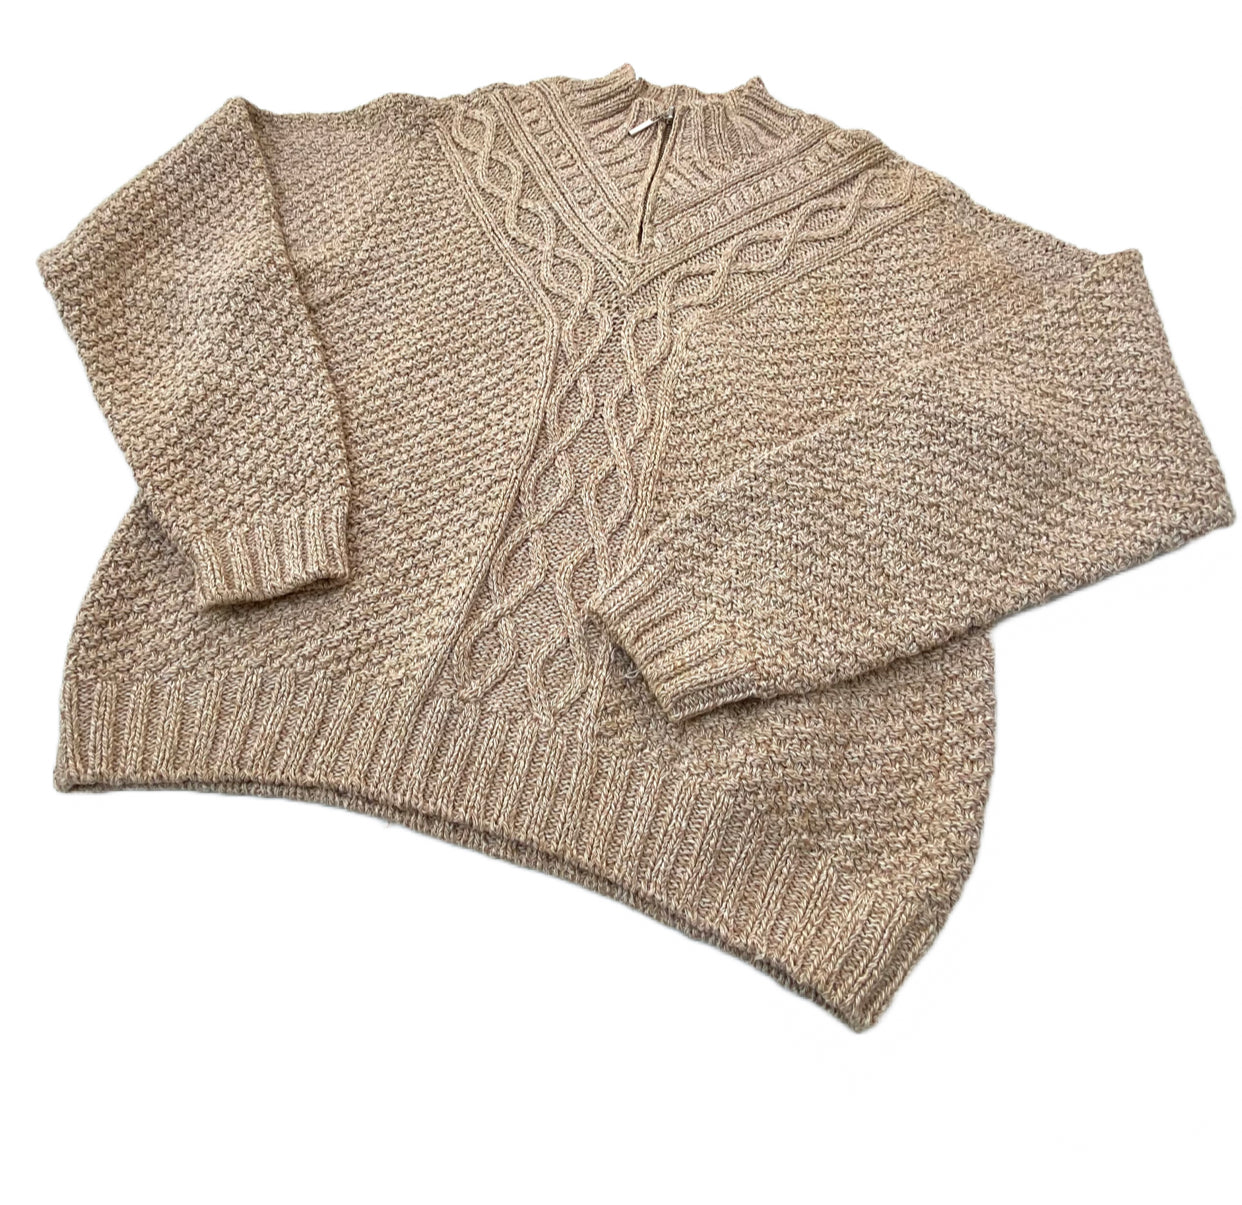 Vintage LizSport Knitwear Sweater